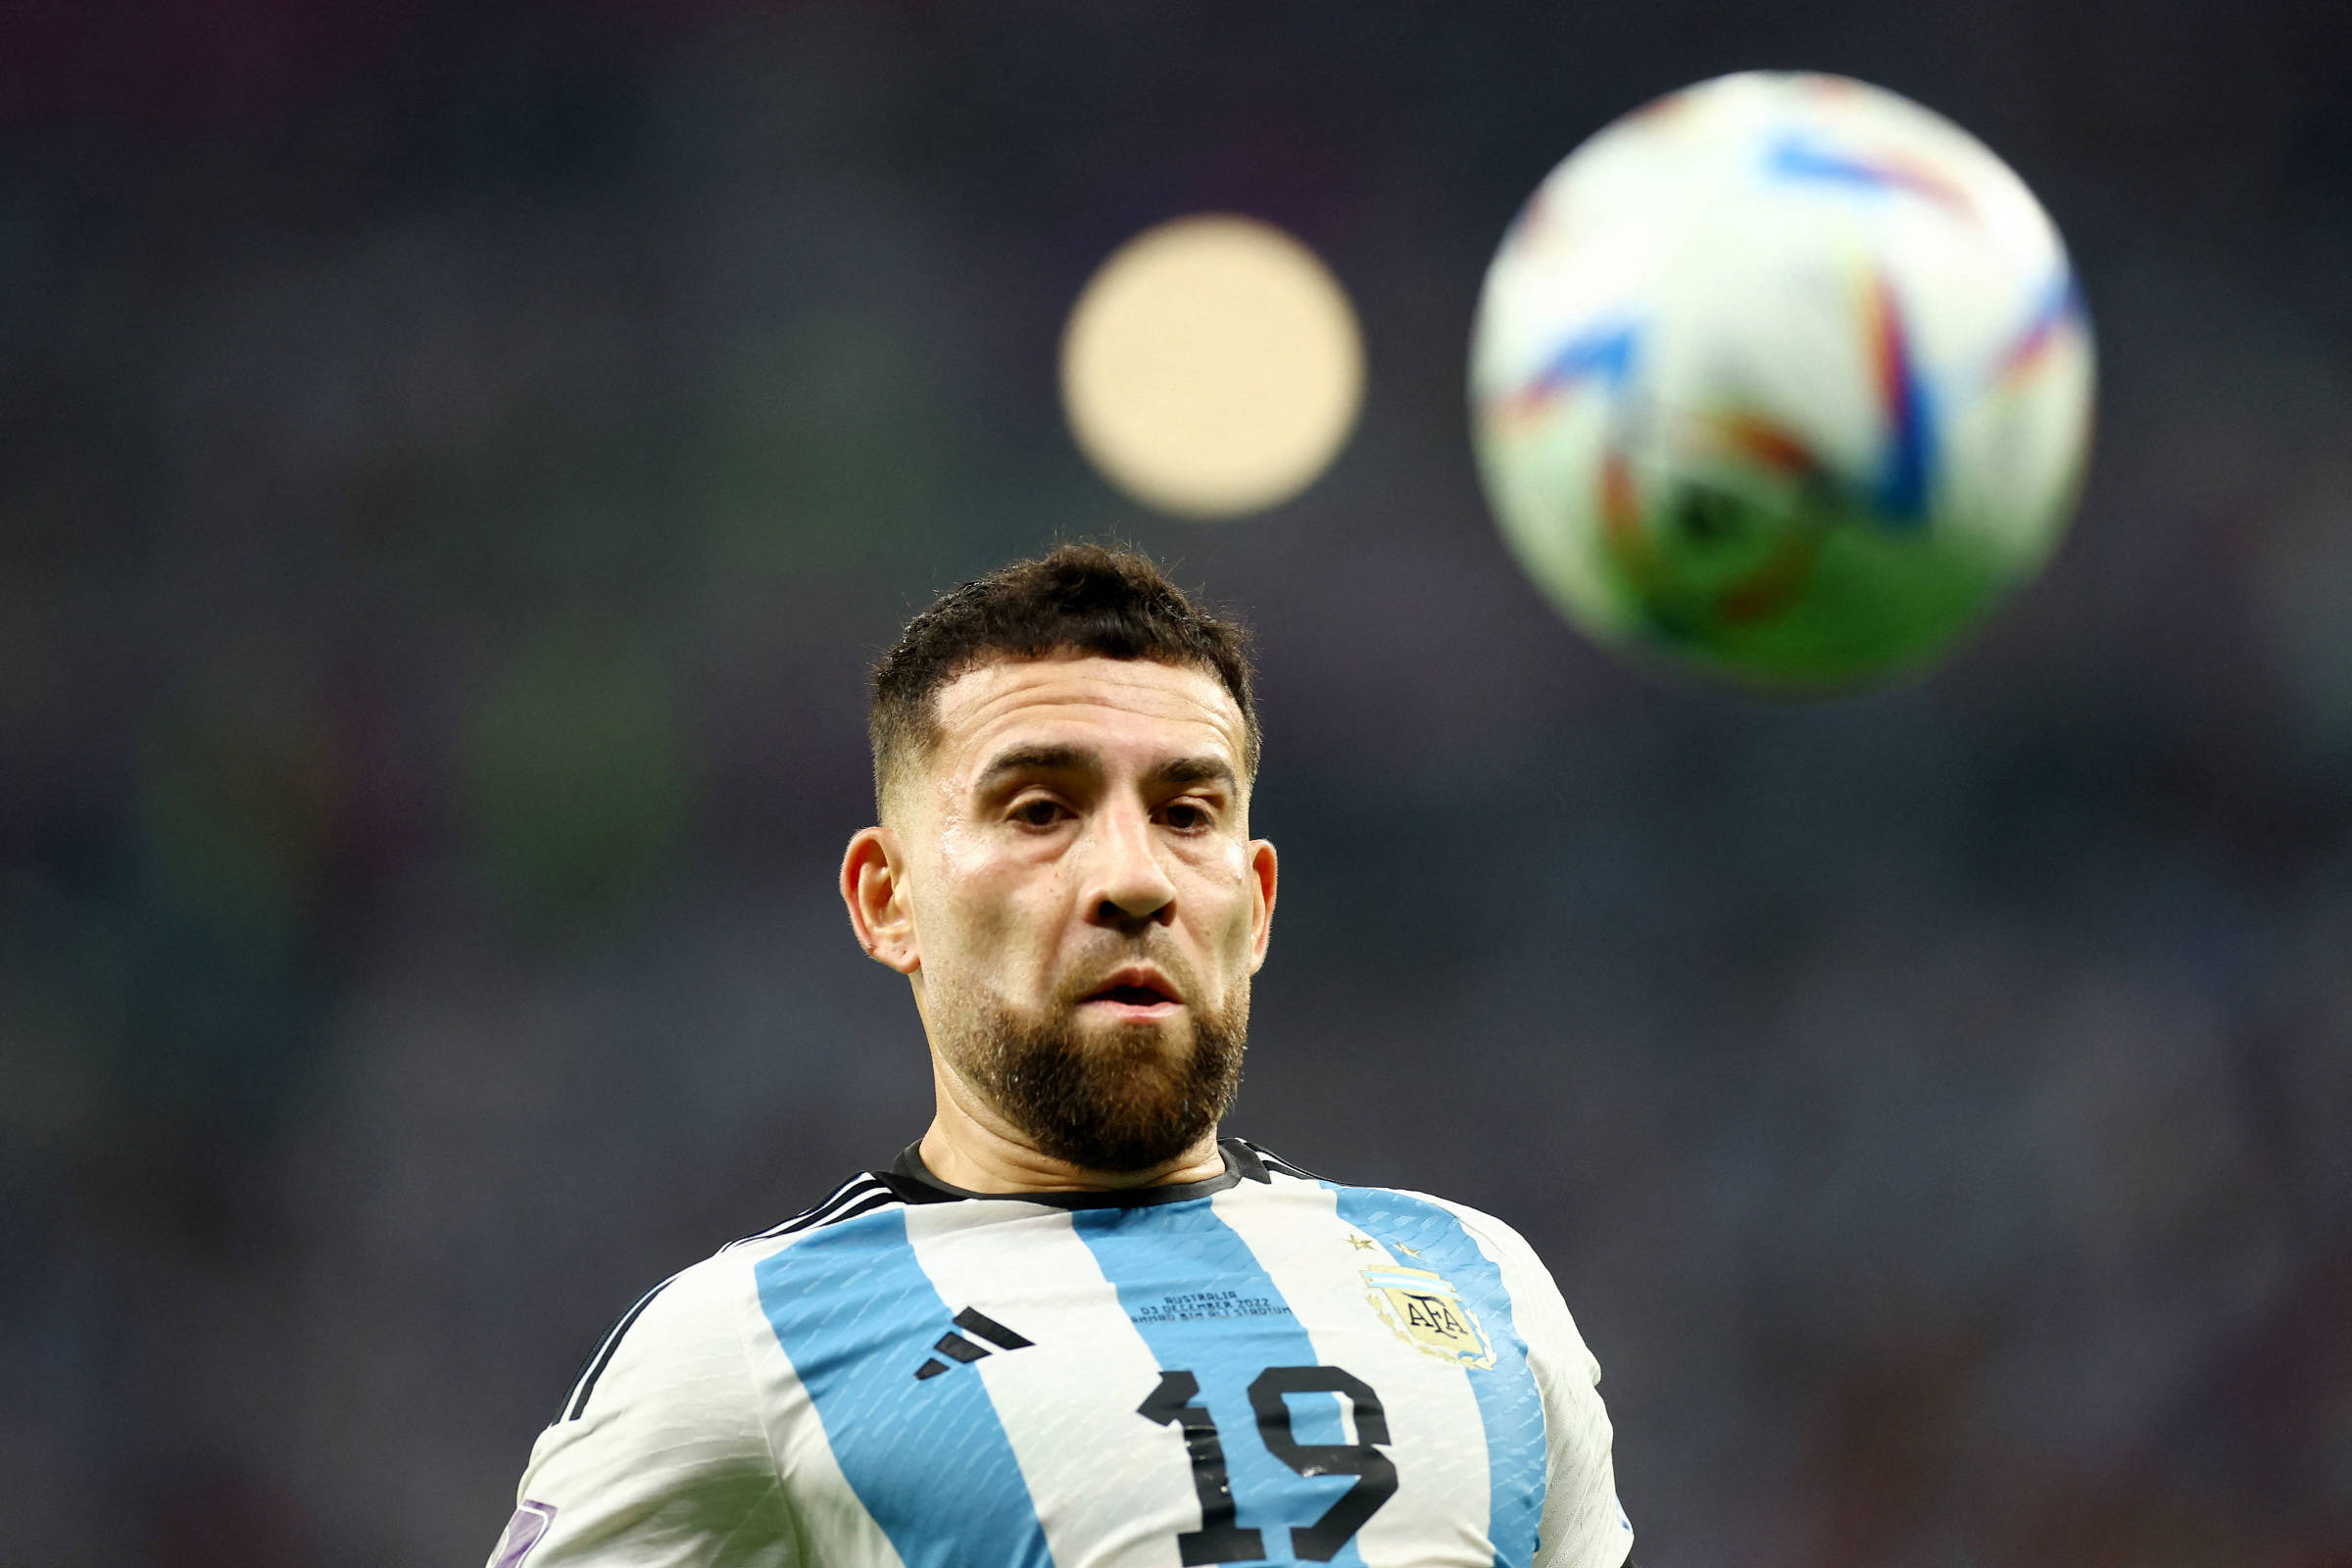 Otamendi decide o jogo quente entre Brasil e Argentina e Darwin faz mais  dois golos pelo Uruguai